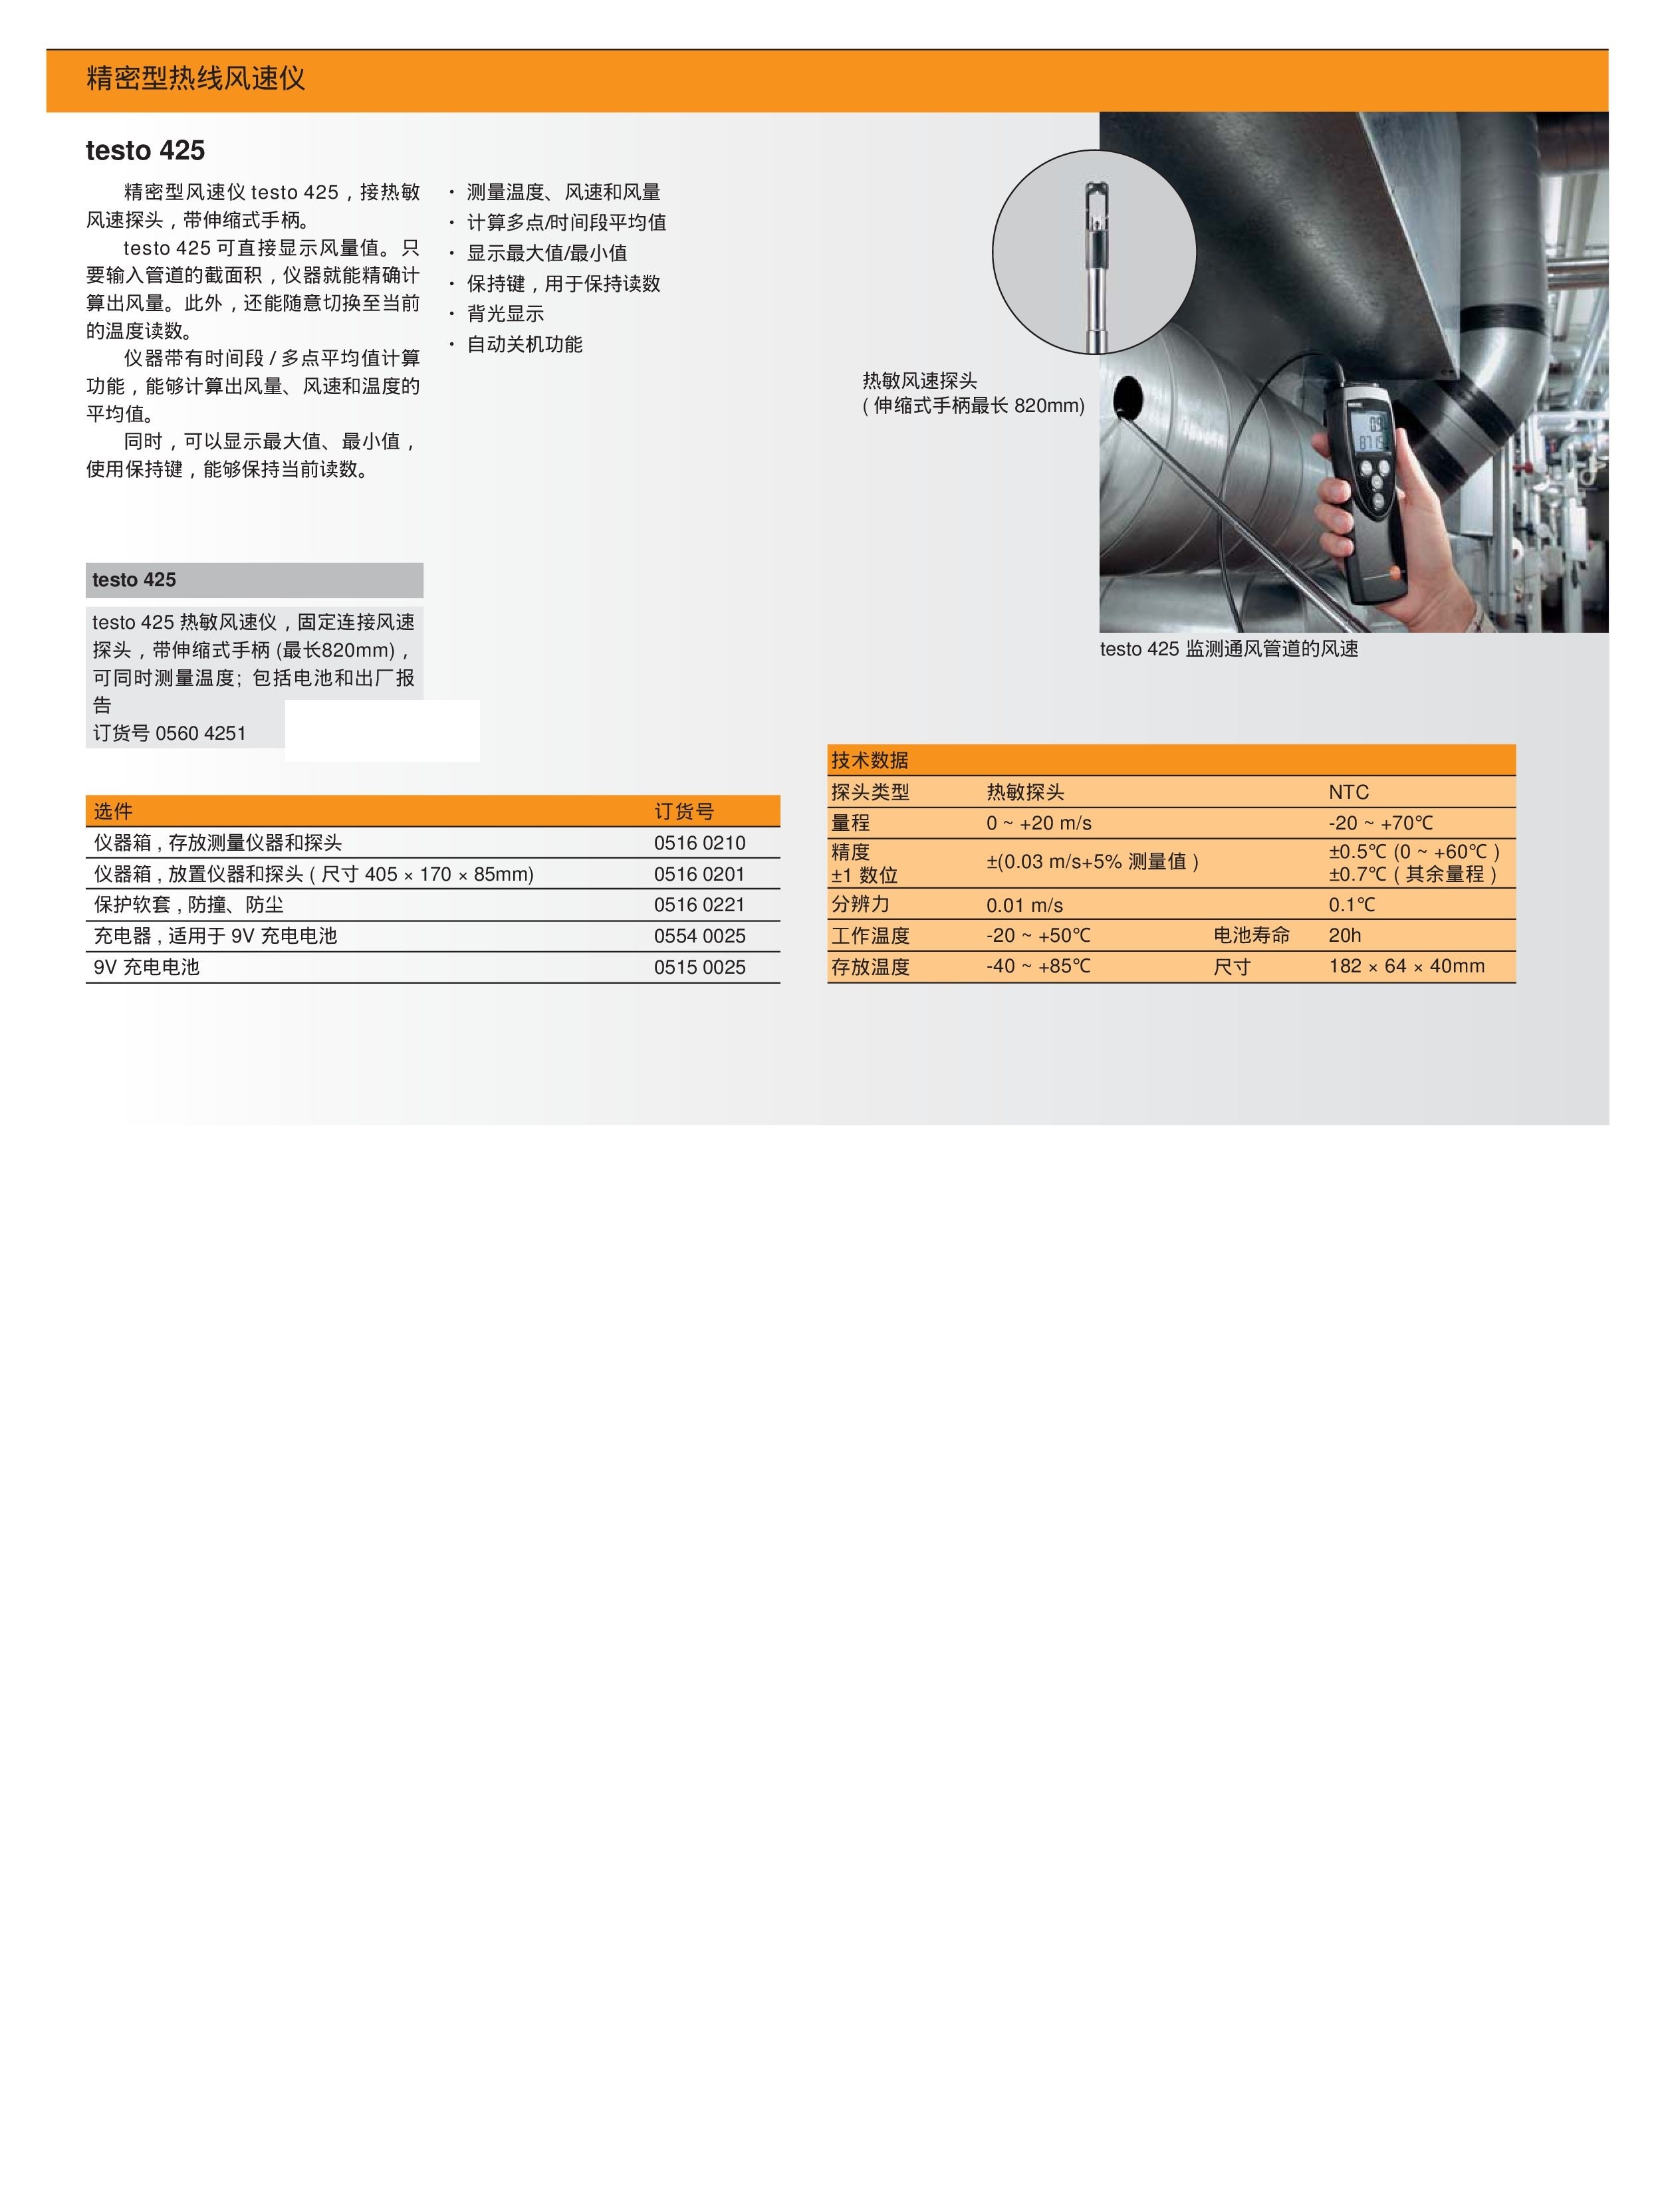 testo 425精密型热线式风速仪(图1)